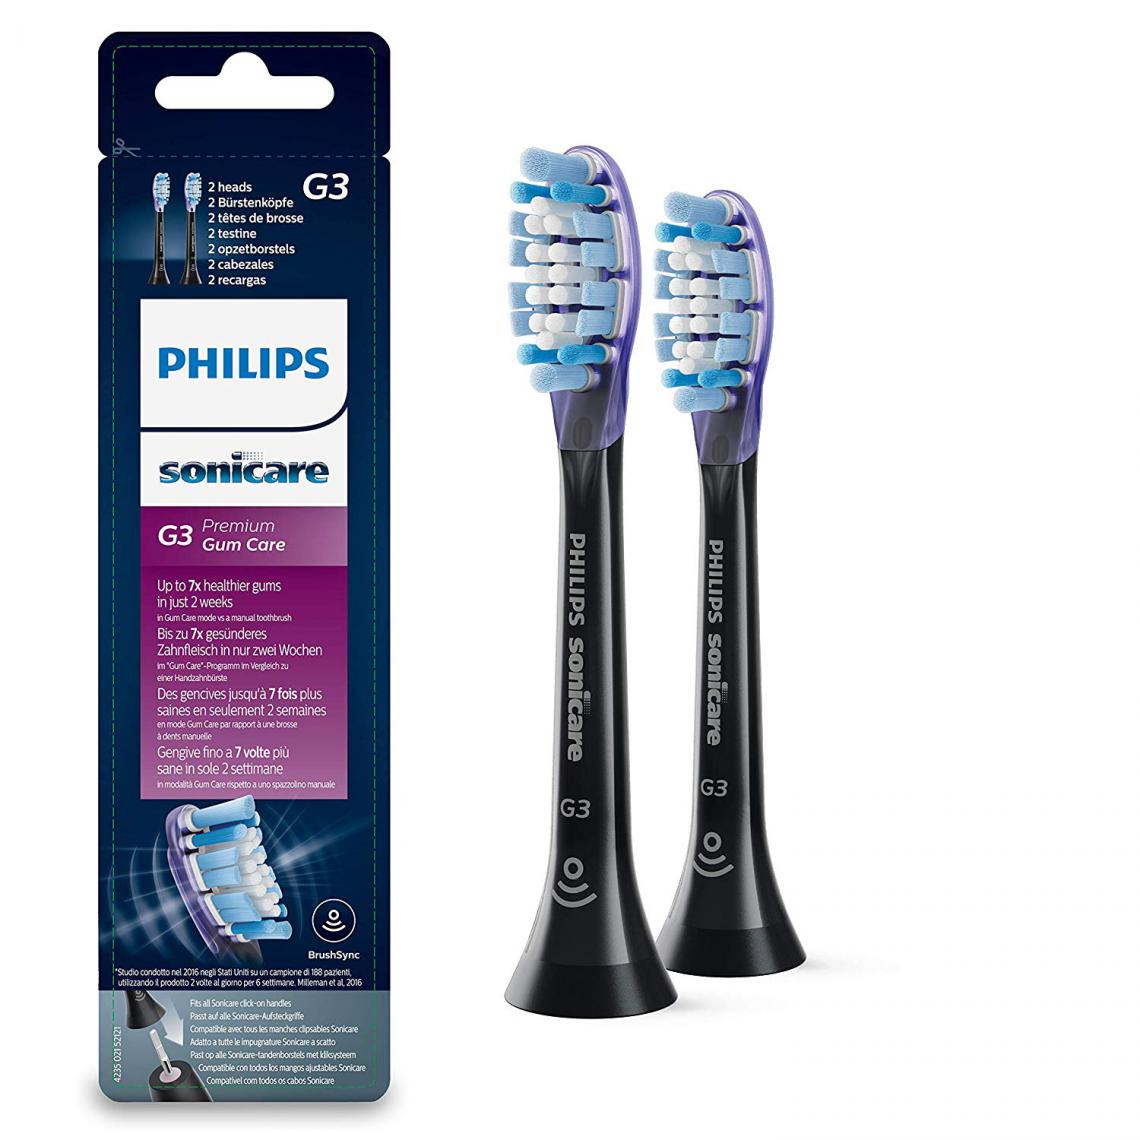 Philips - Philips Sonicare hx9052/33 original Premium Gum Care brossettes de rechange pour Diamond Clean Smart, Lot de 2, noir - Brosse à dents électrique